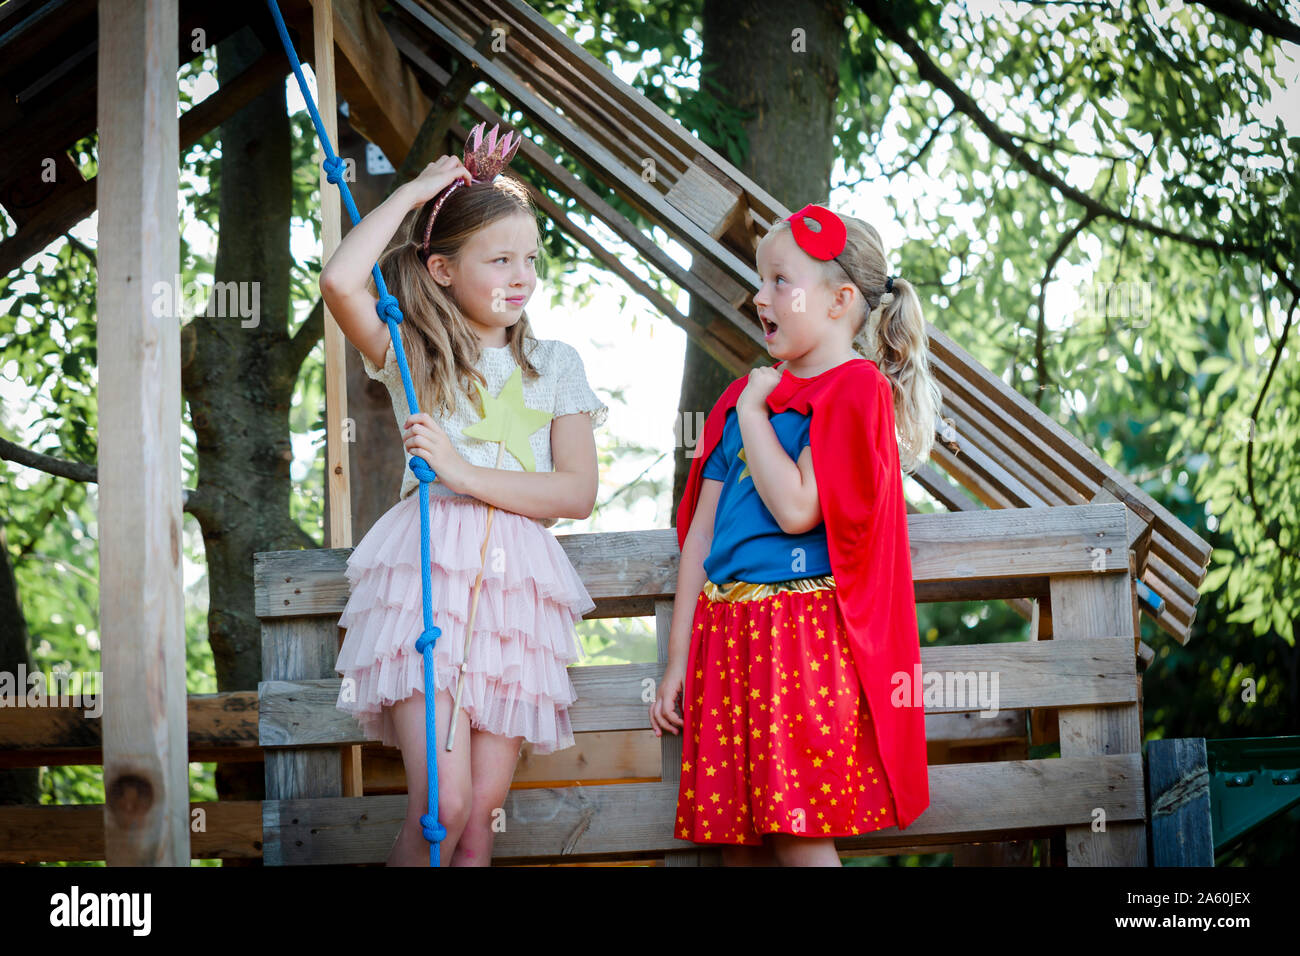 Les filles déguisée en princesse et superwoman jouant dans une maison d'arbre Banque D'Images